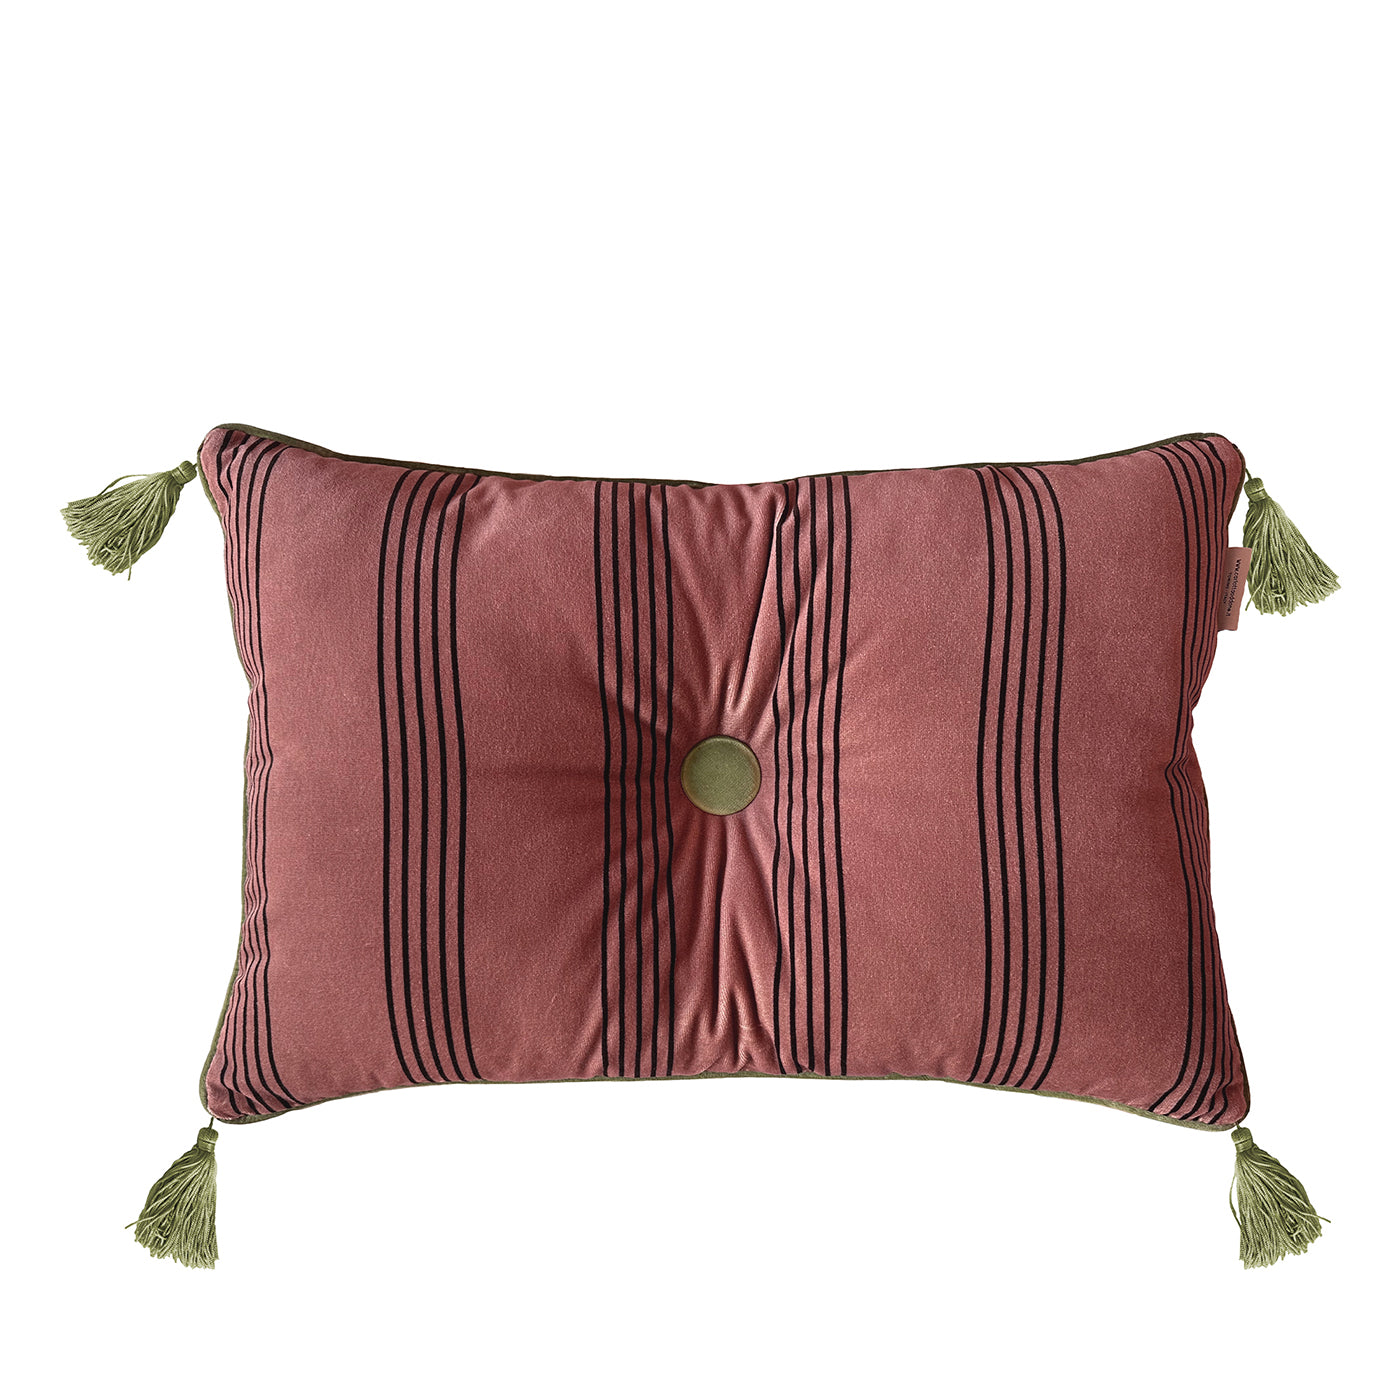 Cuscino Sweet Pillow rettangolare a righe rosa antico - Vista principale